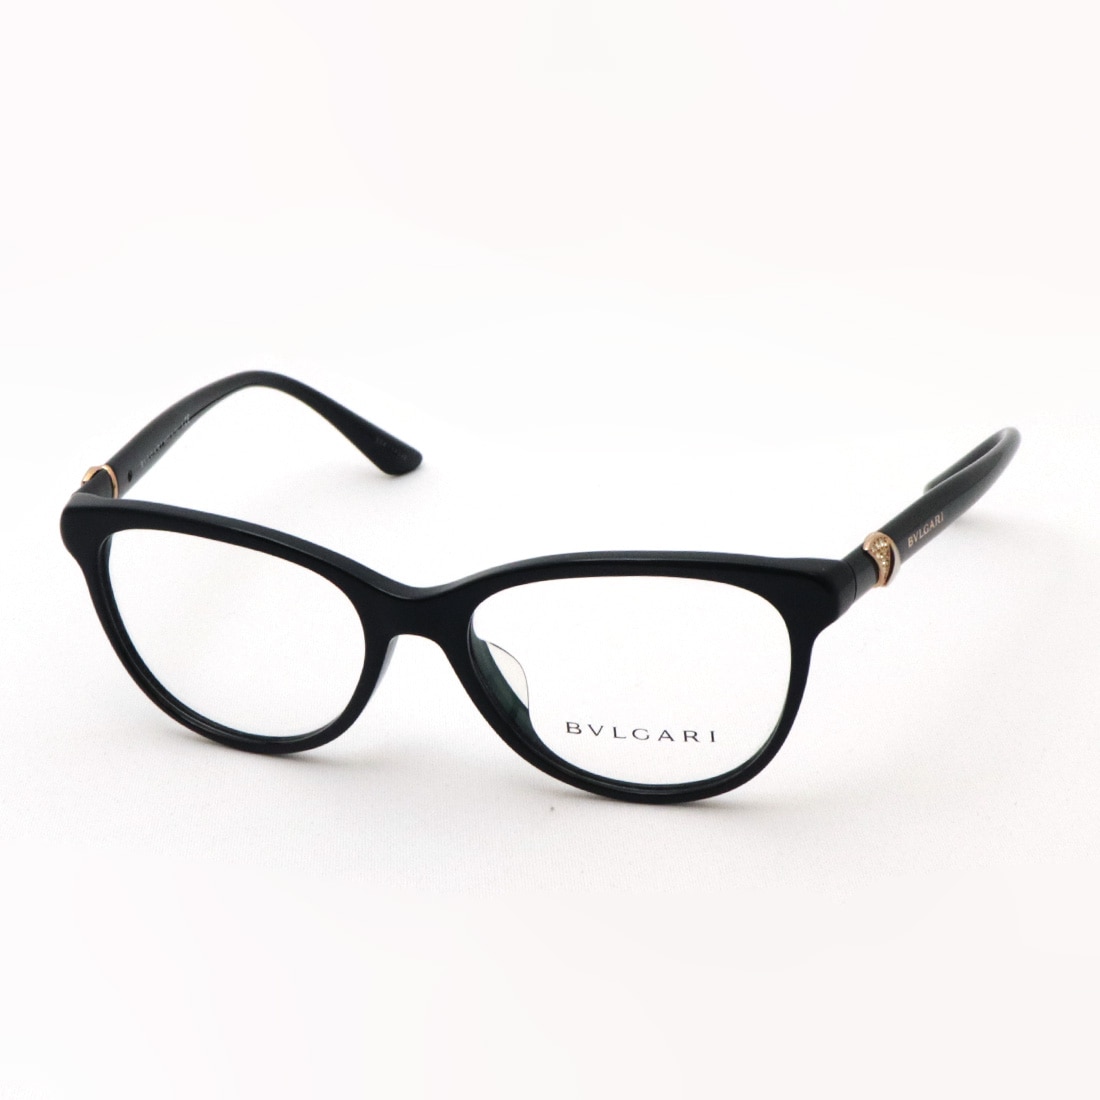 BVLGARI 正規品 イタリア製 フレーム 眼鏡 メガネ ブルガリ 